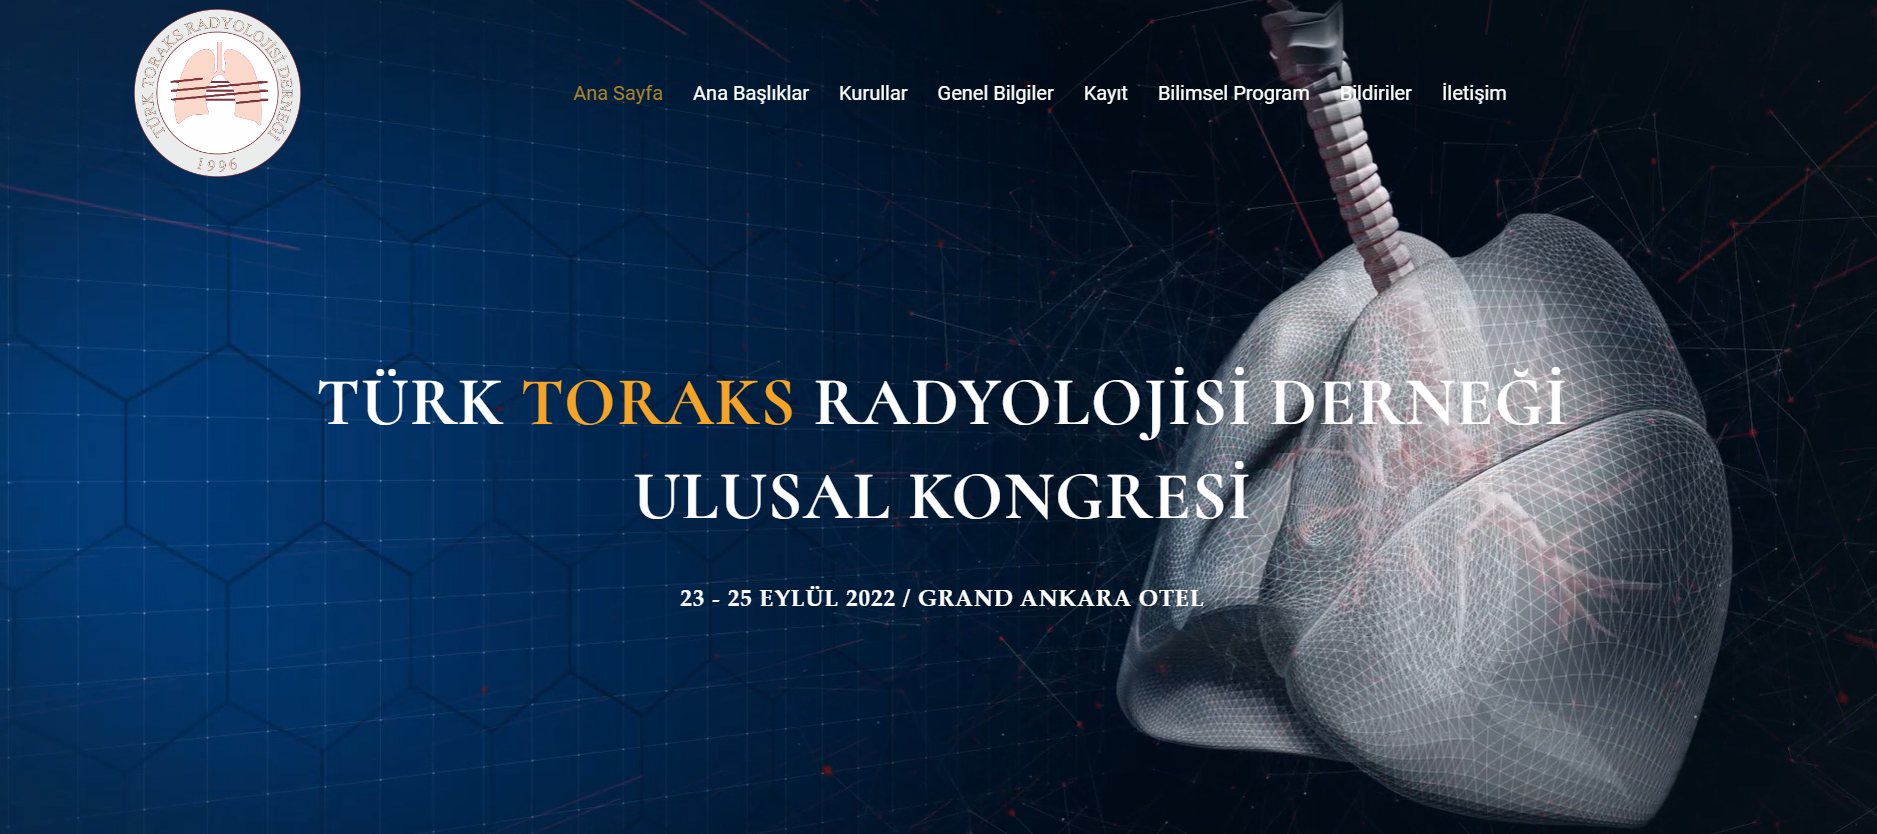 Türk Toraks Radyolojisi Derneği Ulusal Kongresi